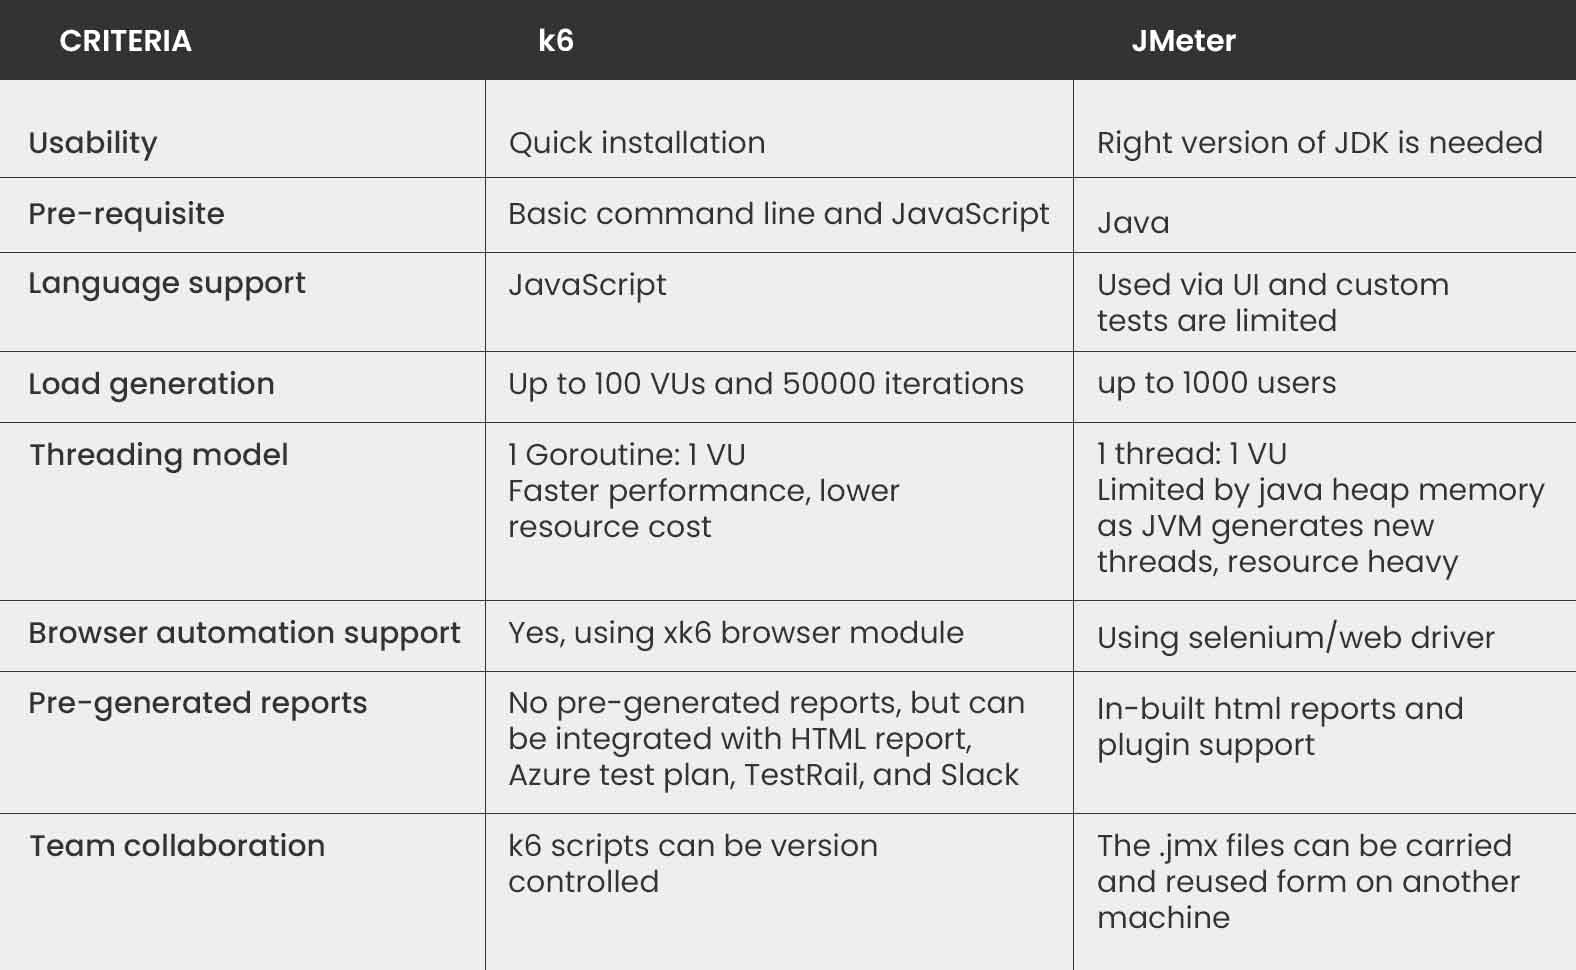 k6 Versus JMeter